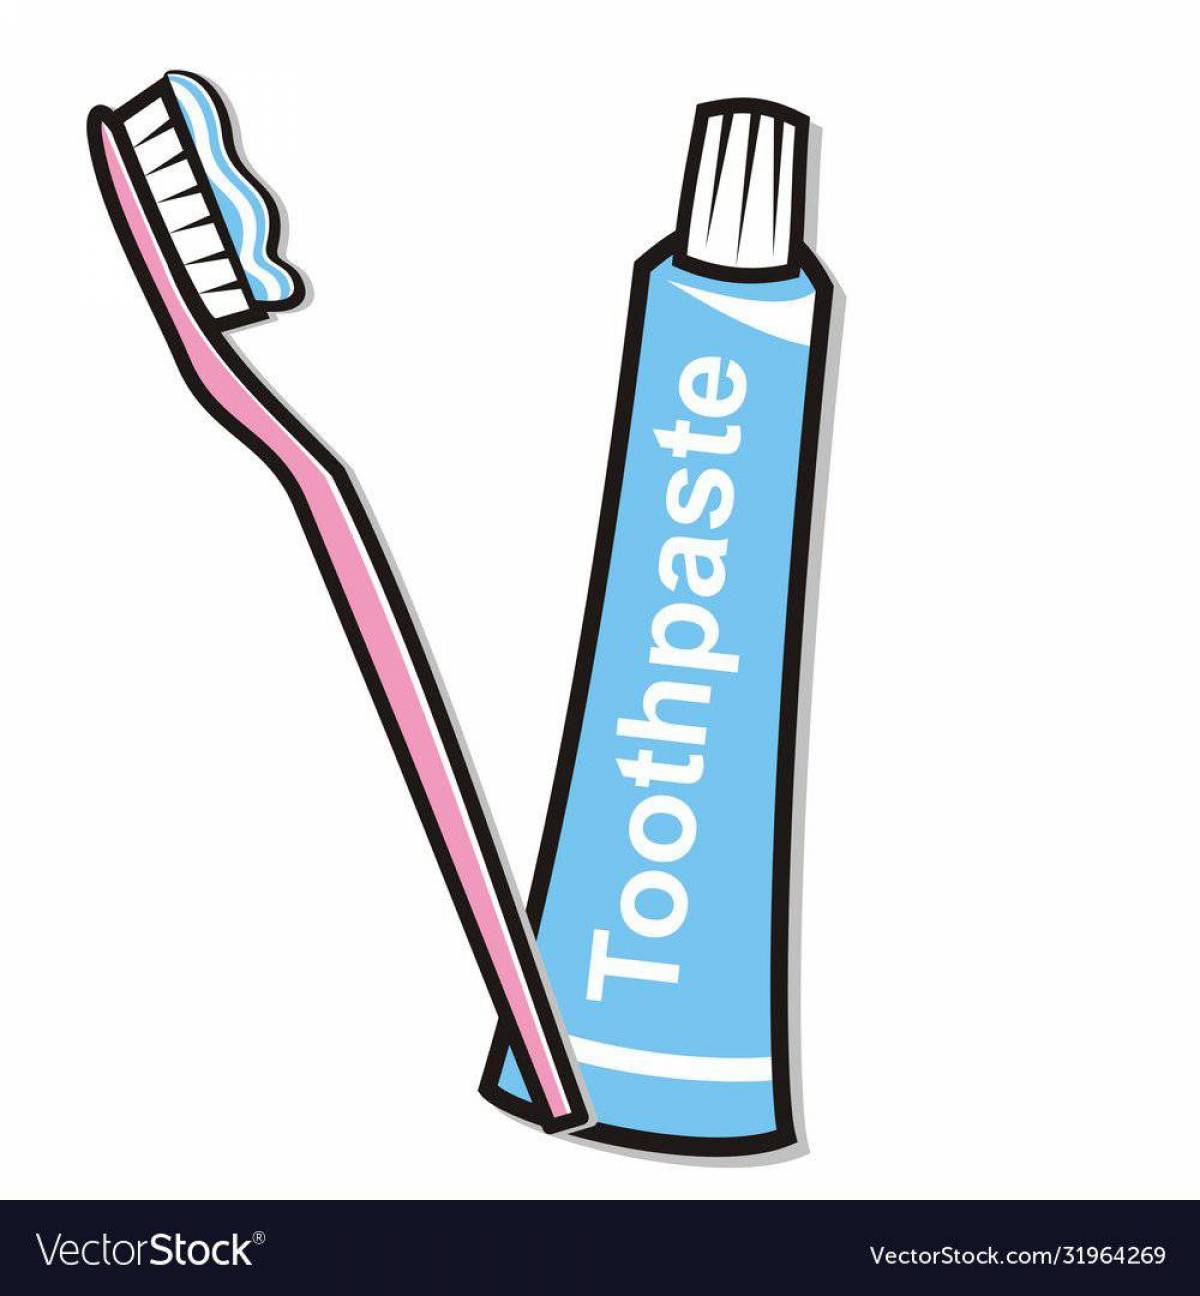 Зубная щетка и паста для детей #15